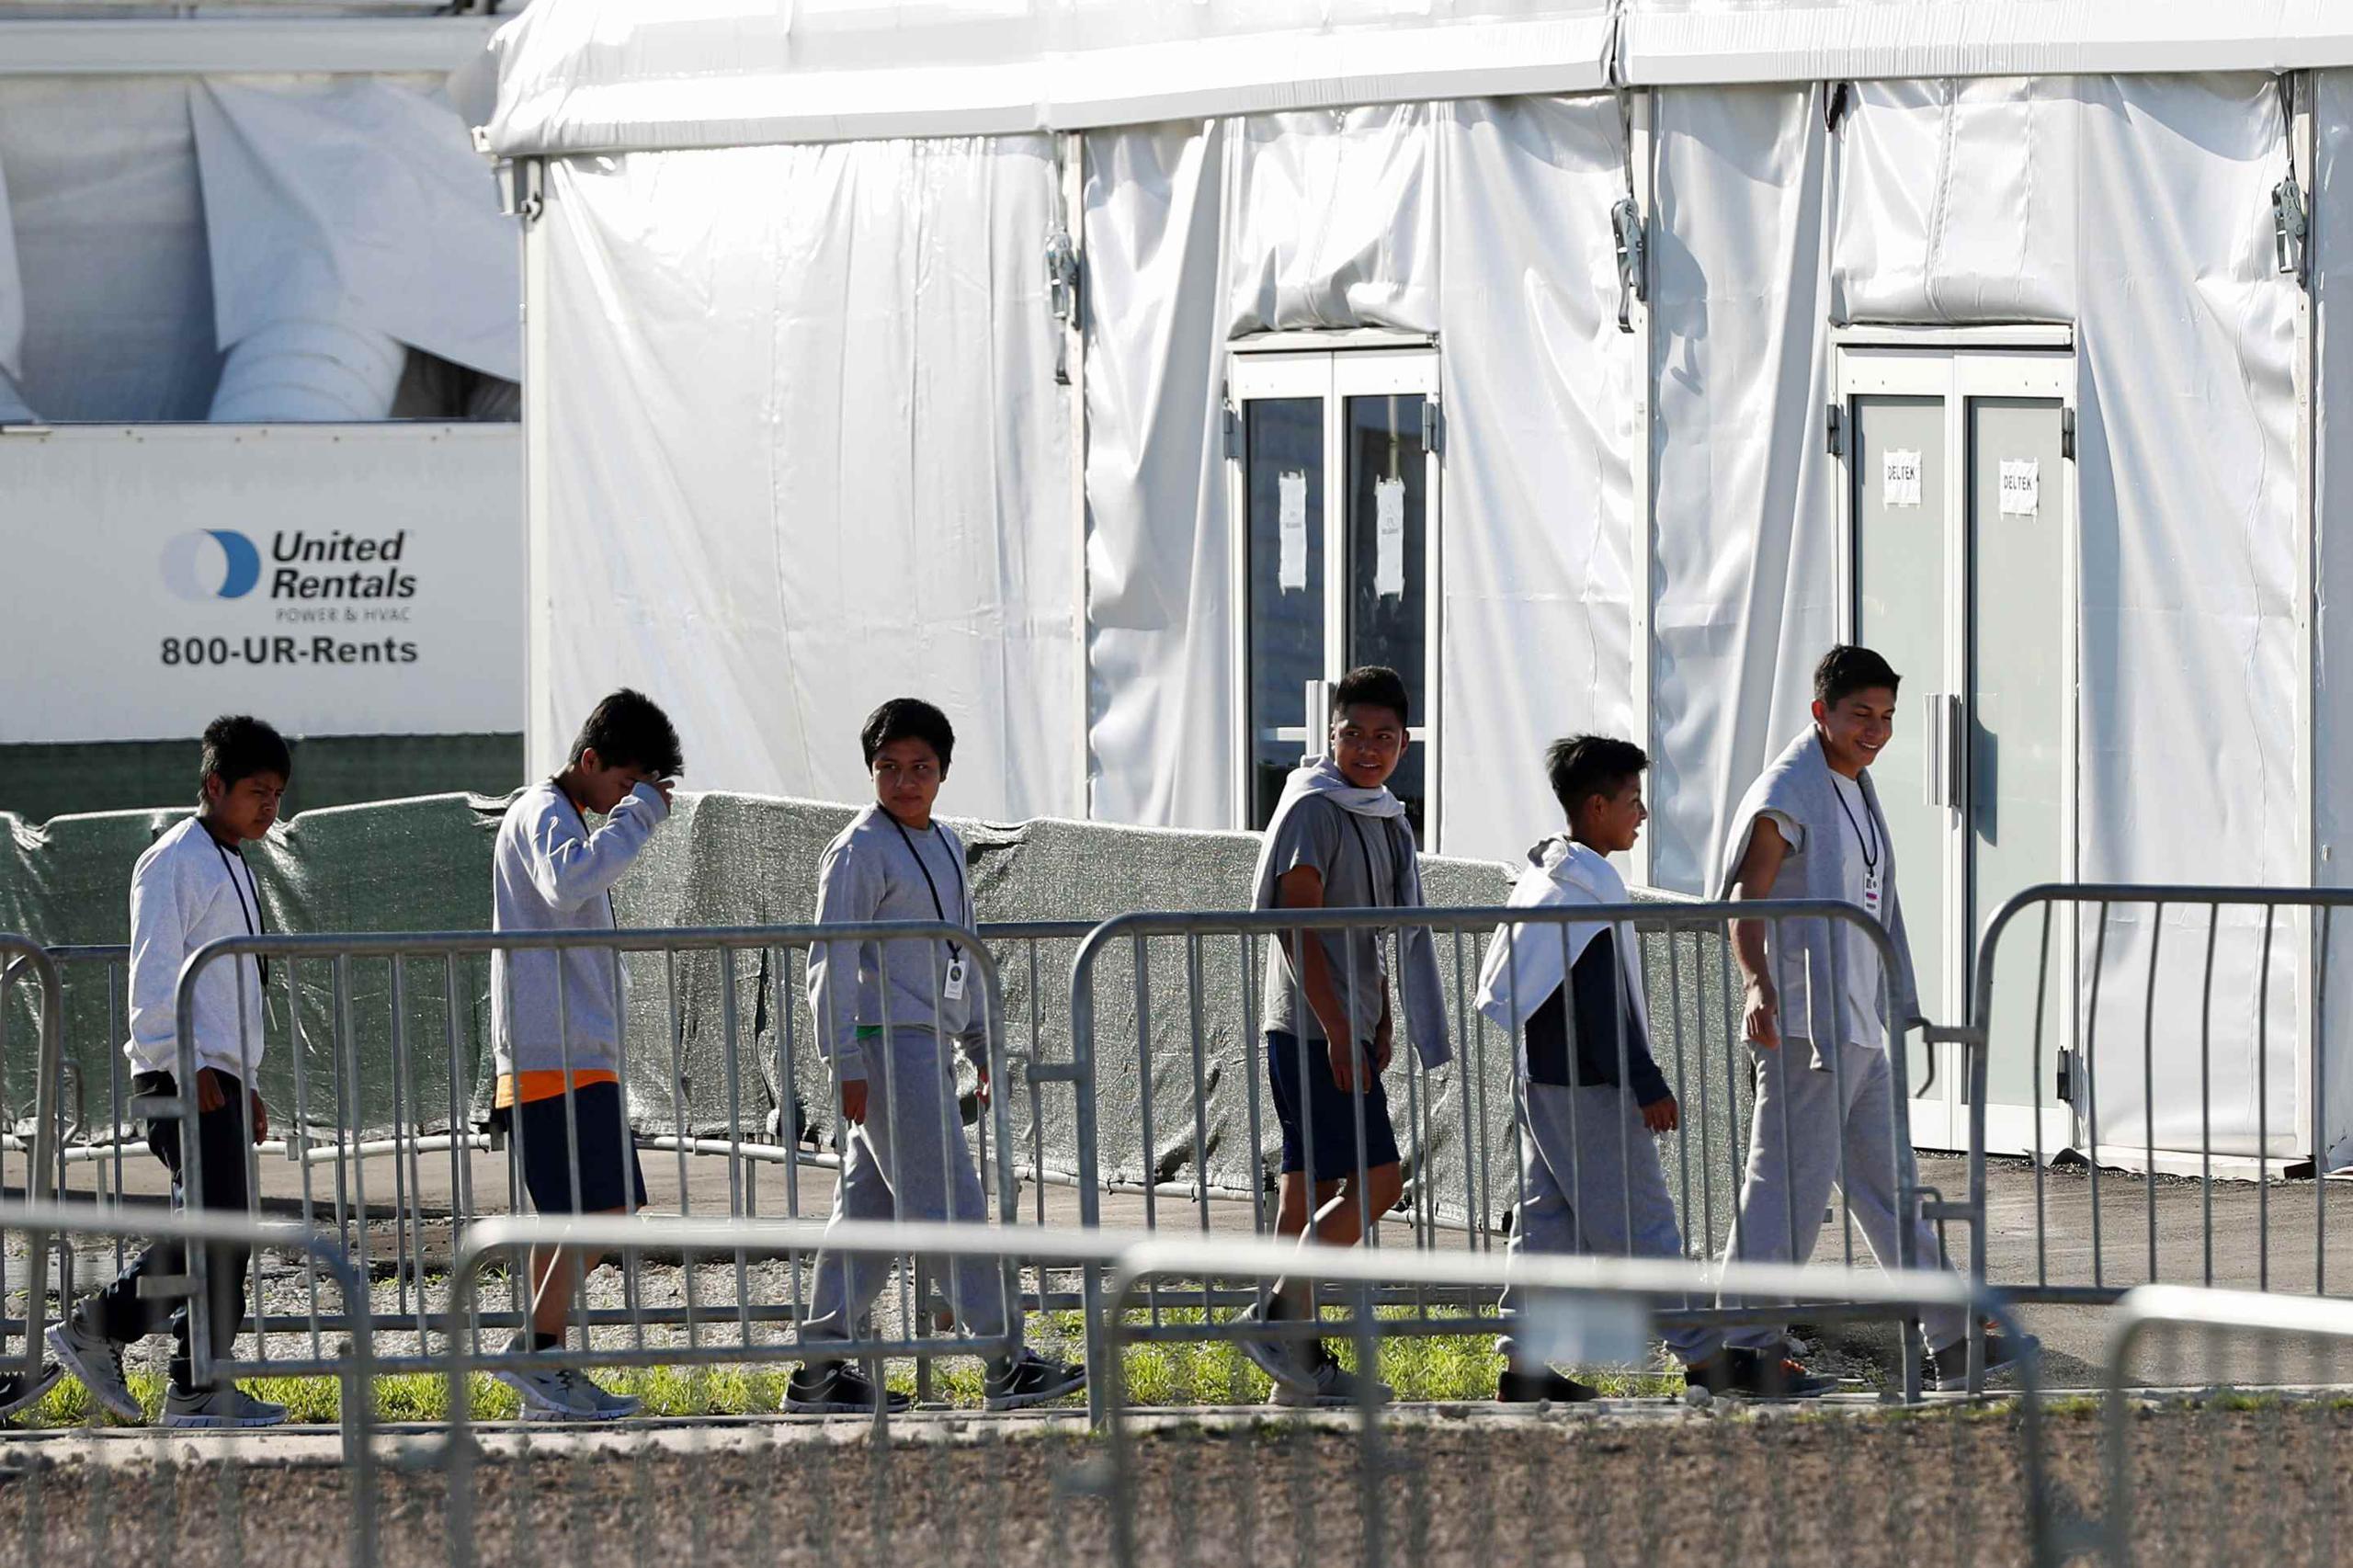 Legisladores y defensores de los derechos de los inmigrantes han emitido duras críticas a la forma en que se trata a los menores, diciendo que el centro es más una prisión que una "albergue". (AP)